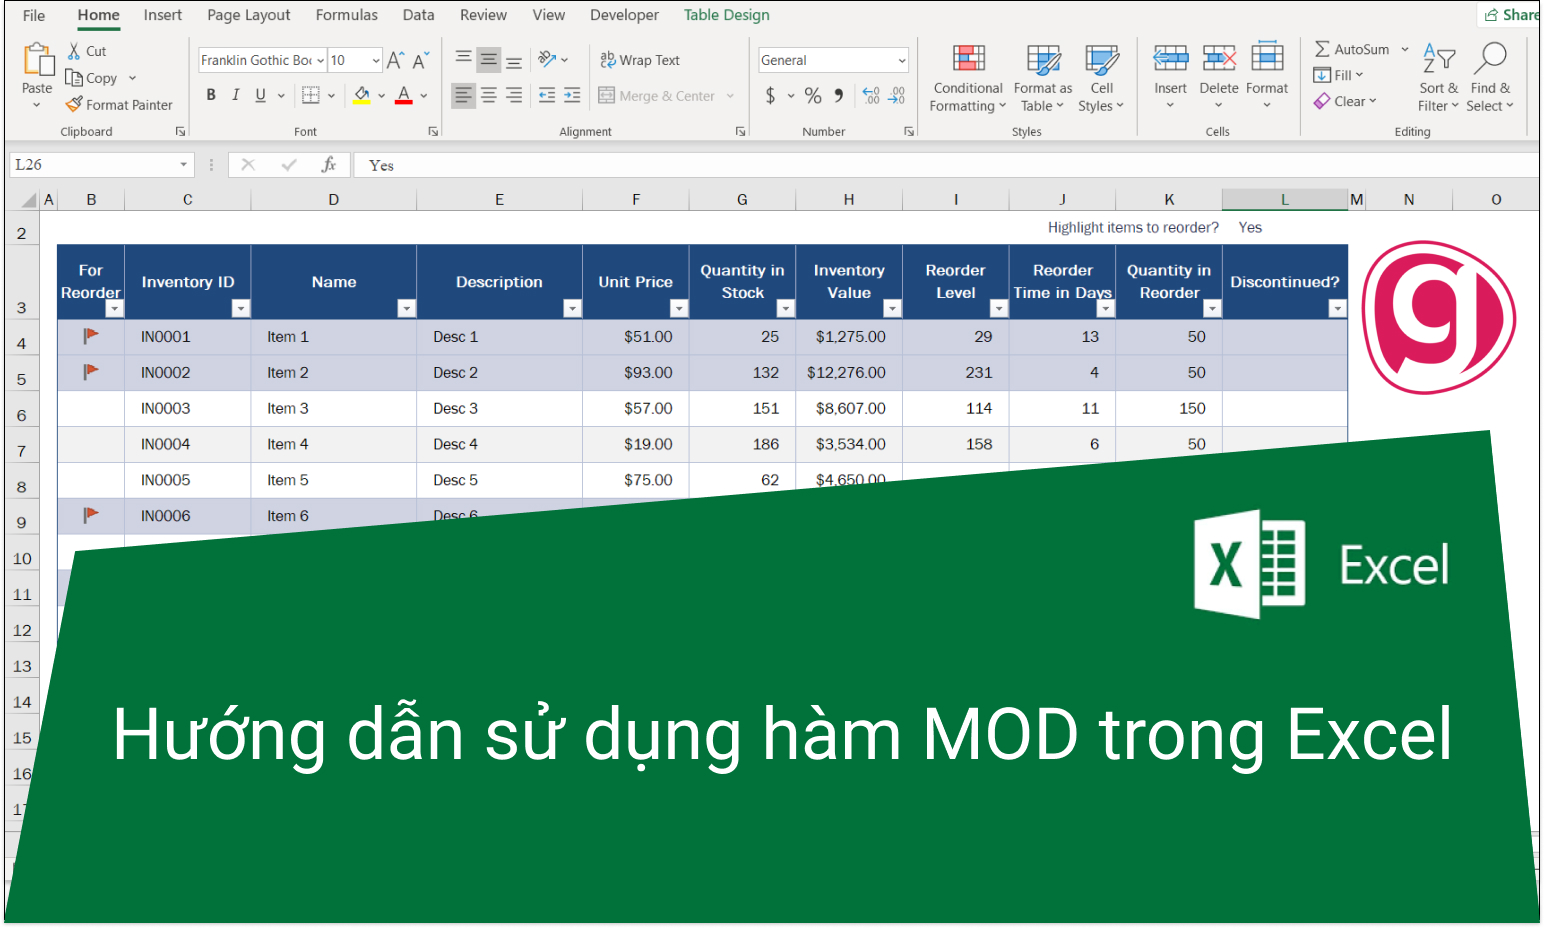 Hàm MOD trong Excel có những đối số nào?
